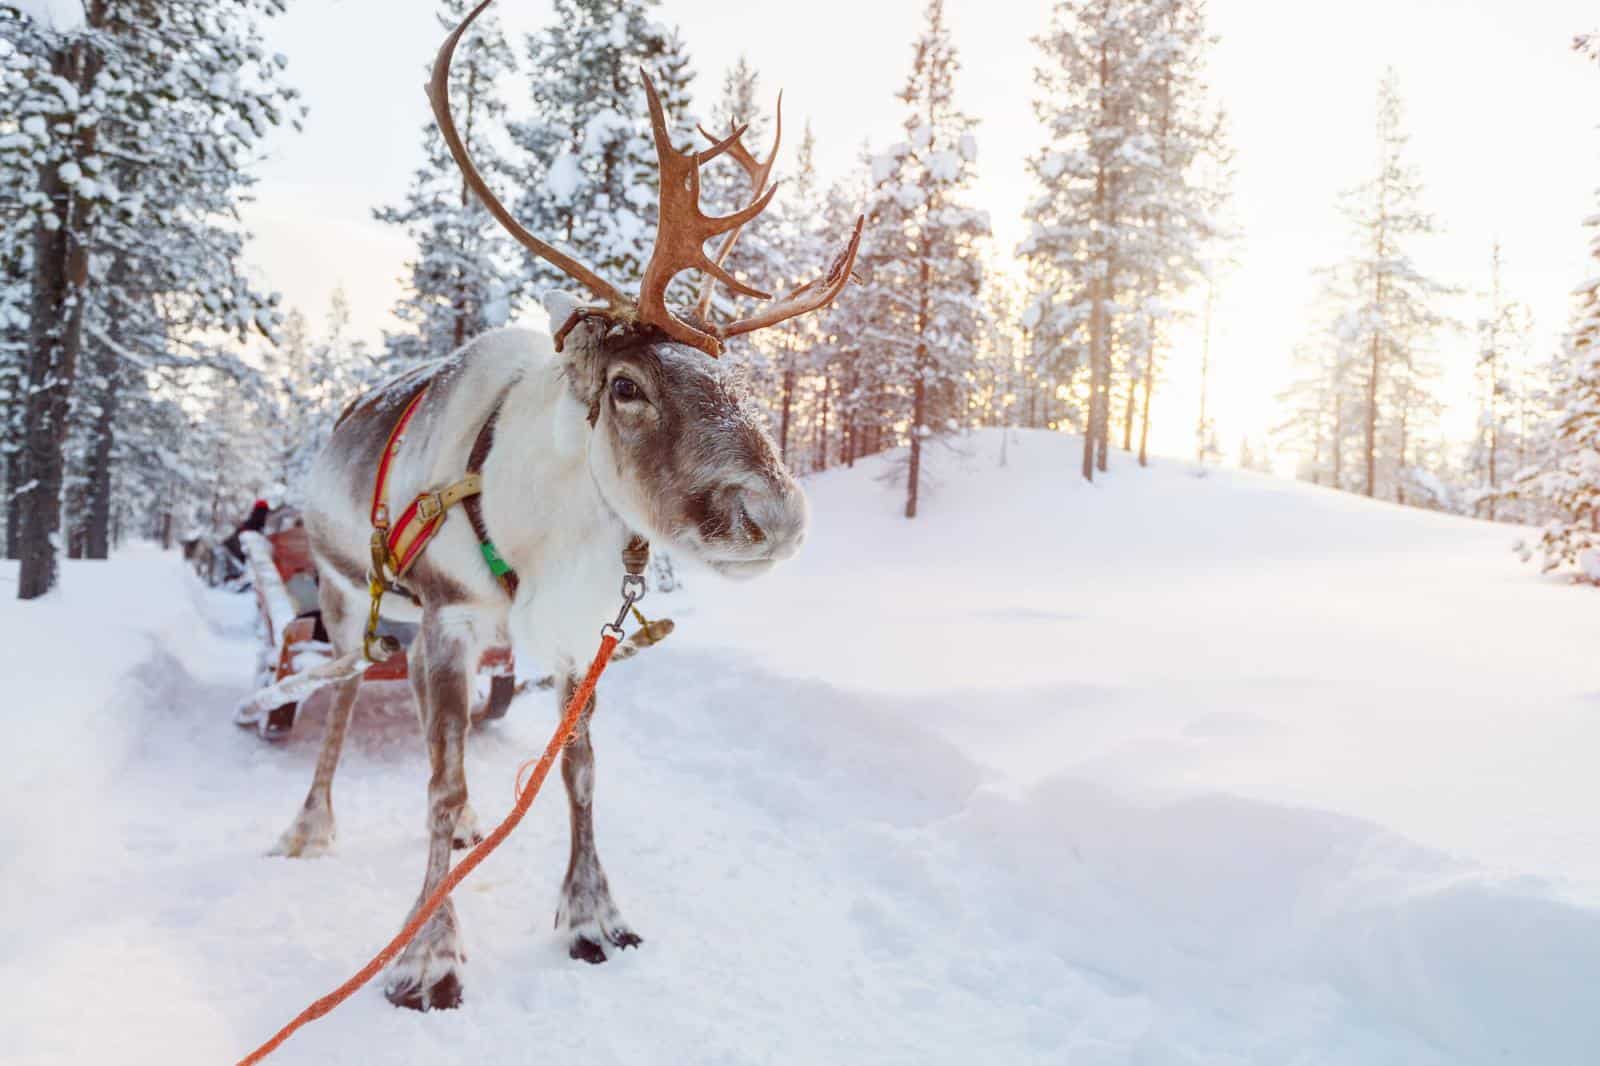 reindeer in snow - Visiting lapland in December